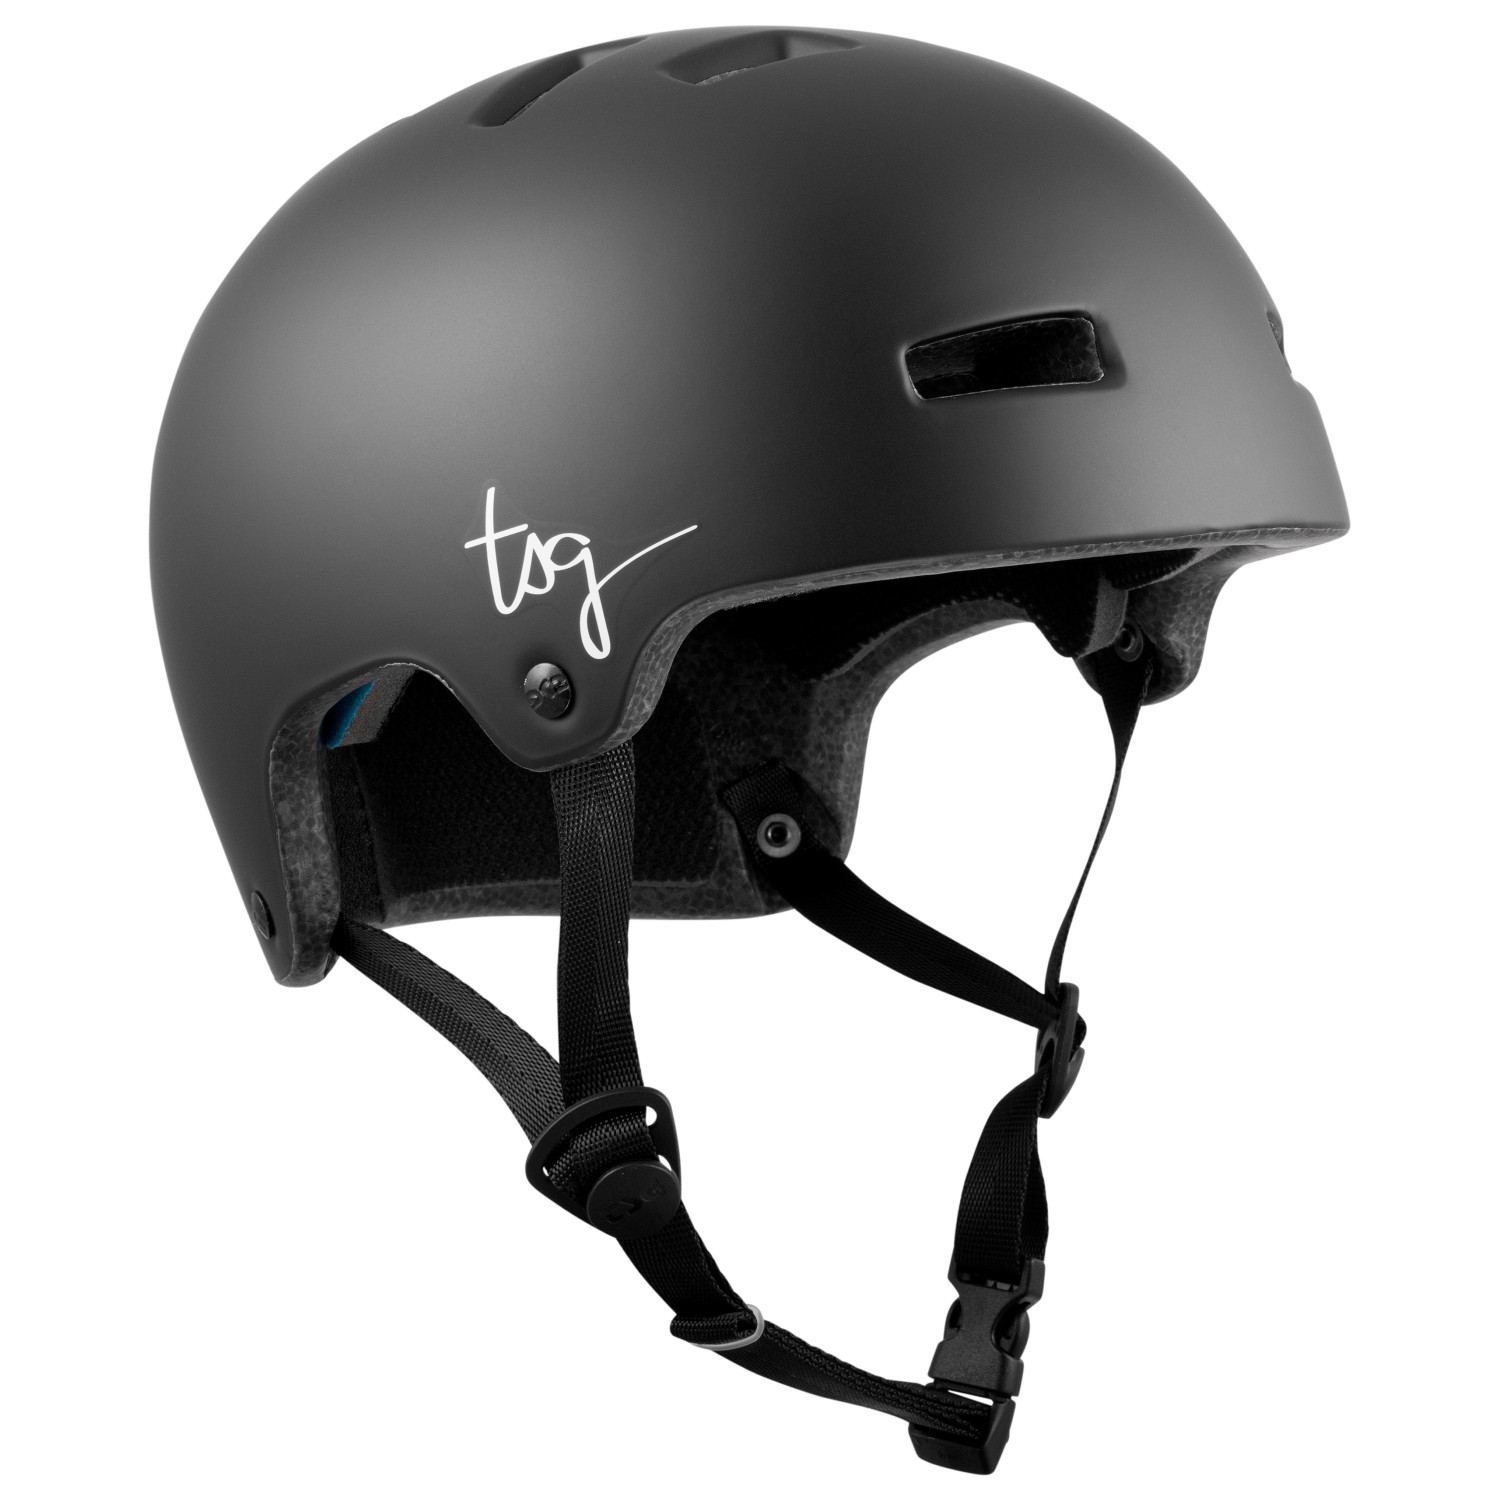 Велосипедный шлем Tsg Women's Ivy Solid Color, цвет Satin Black